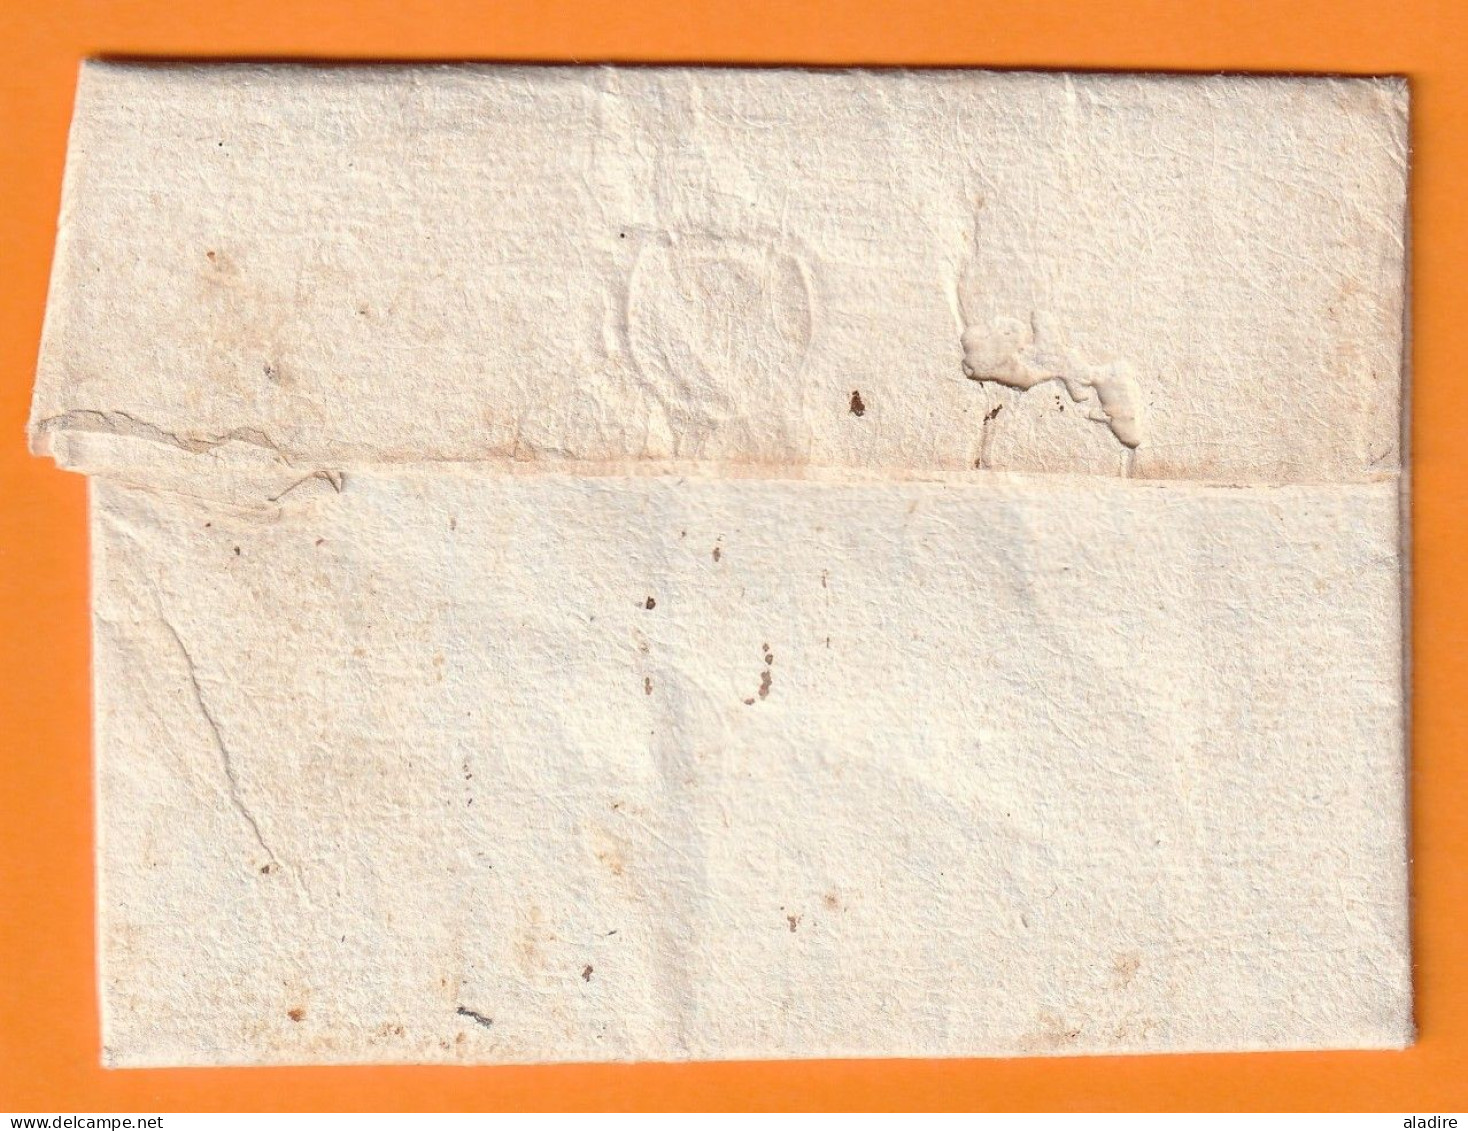 1782 - Marque Postale Manuscrite LANGEAC Sur Lettre De CHANTEUGES, Haute Loire Vers RIOM, Puy De Dôme - 1701-1800: Précurseurs XVIII